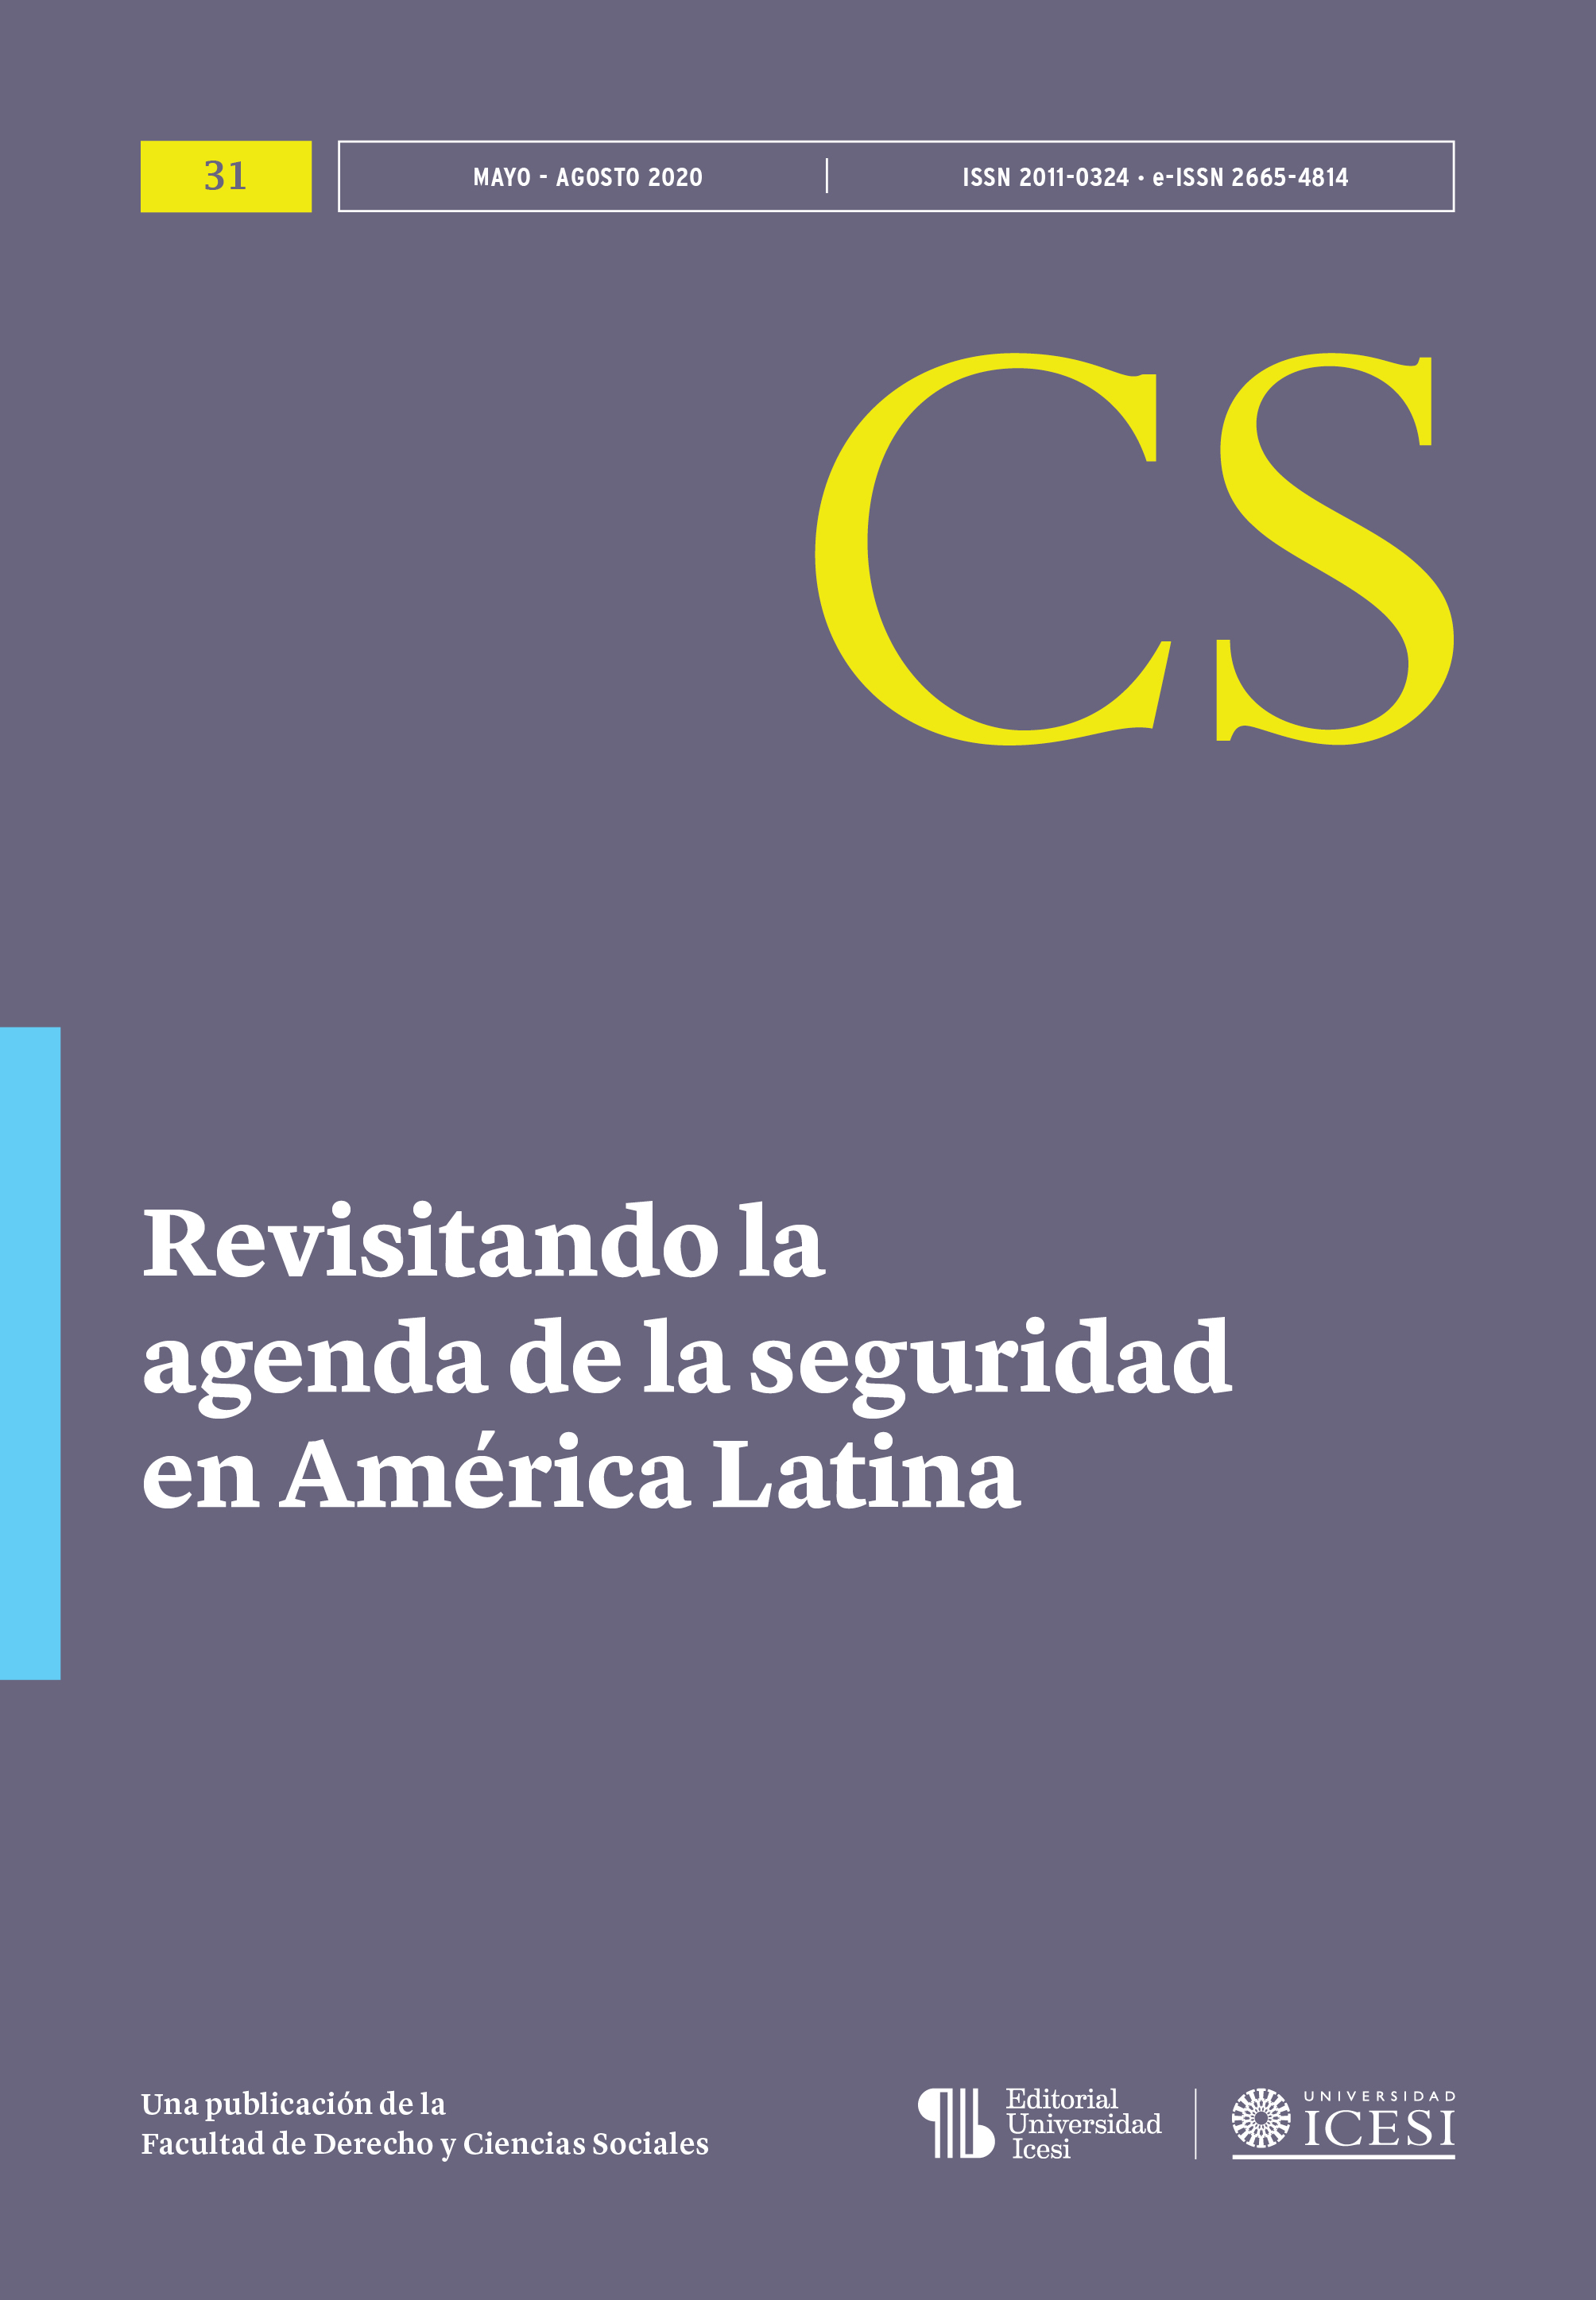 					View No. 31 (2020): No. 31, Mayo-Agosto (2020): Revisitando la agenda de la seguridad en América Latina
				